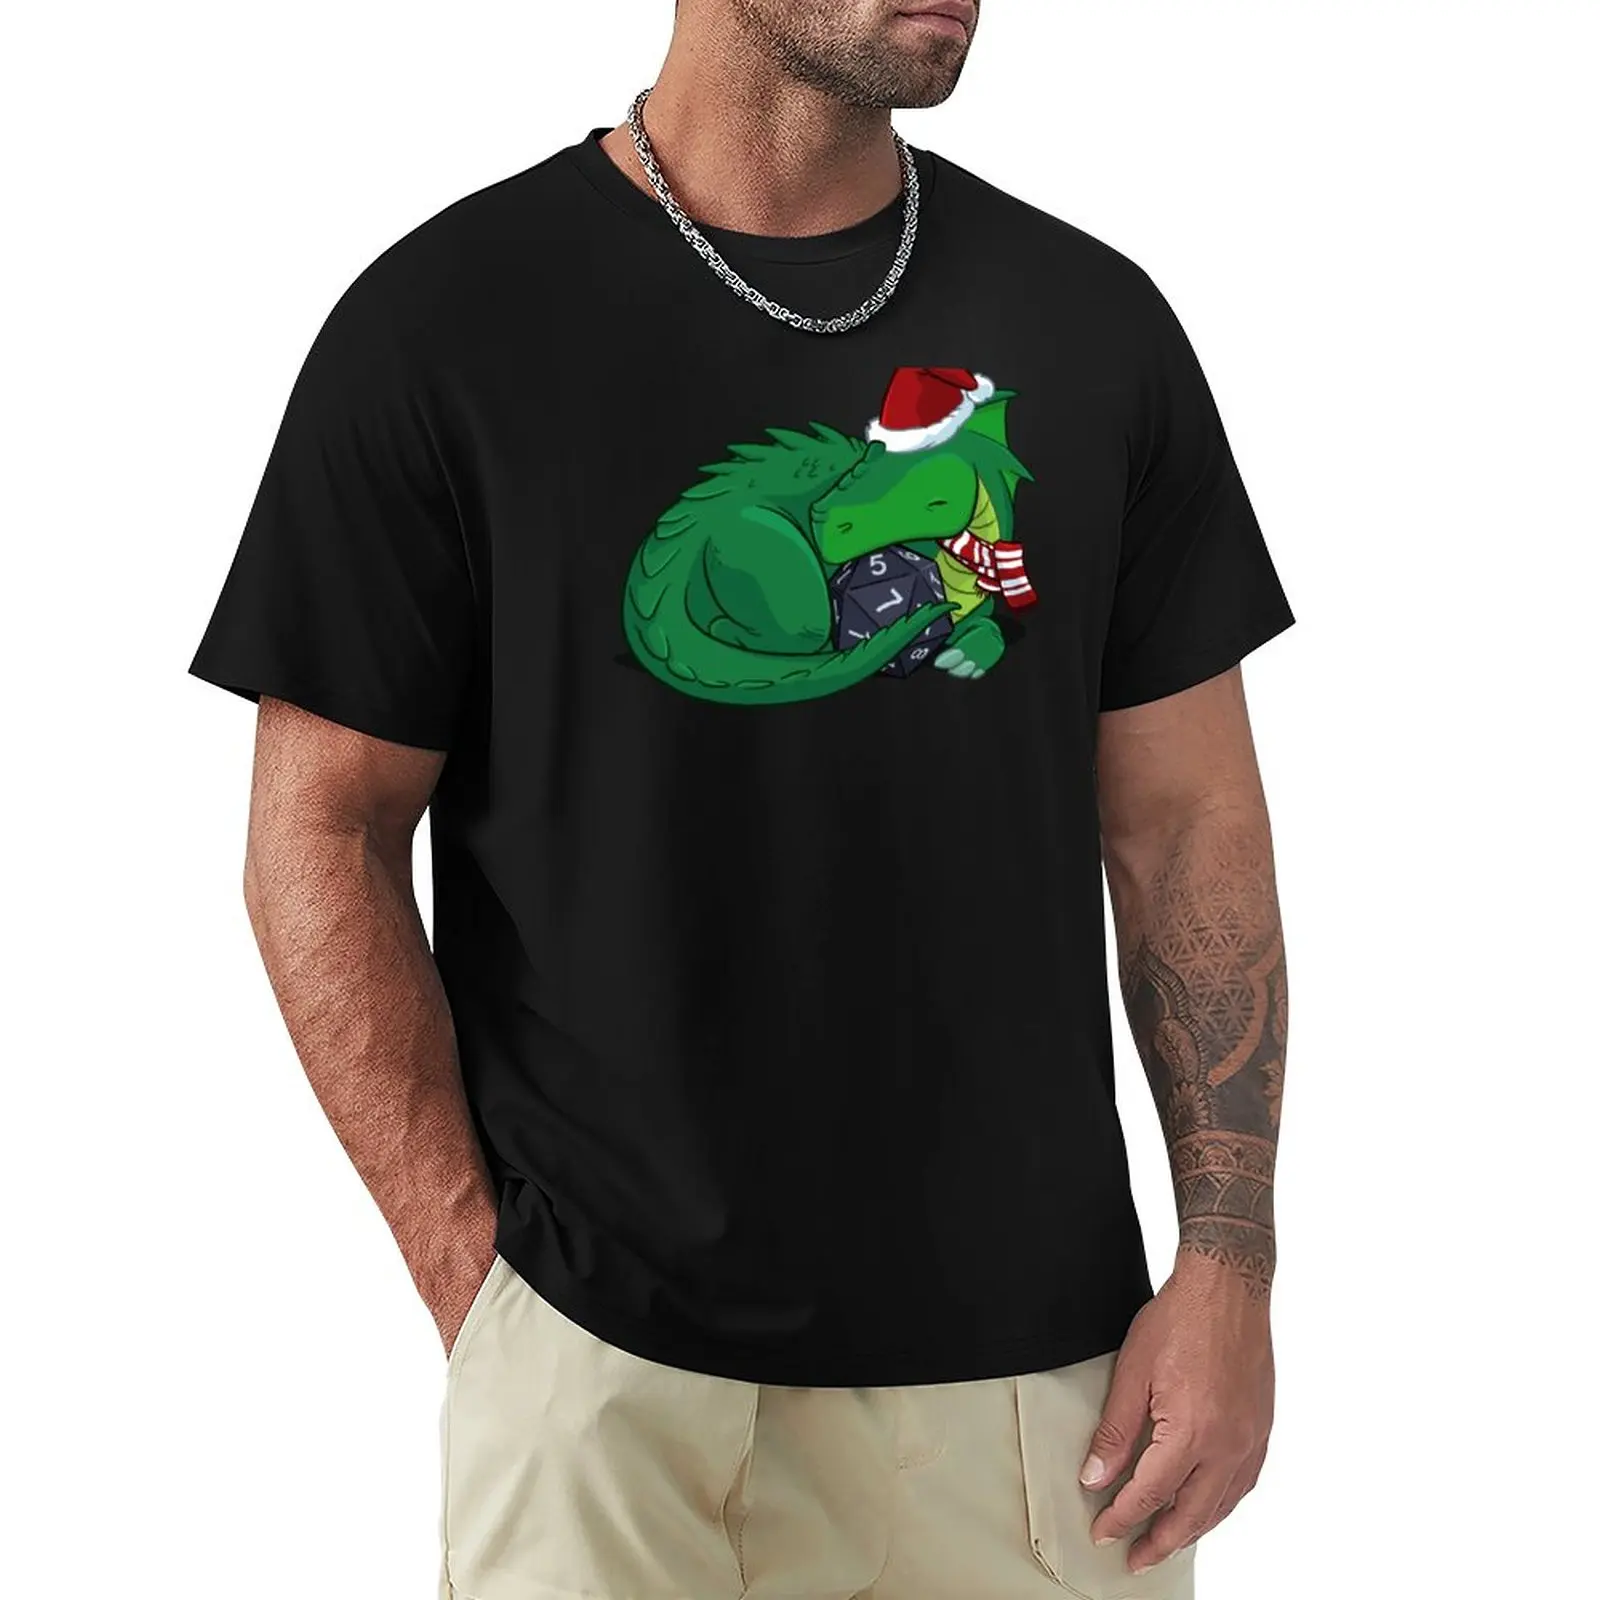 

Праздничная футболка D20 с зеленым драконом, таможенные заготовки, мужская одежда